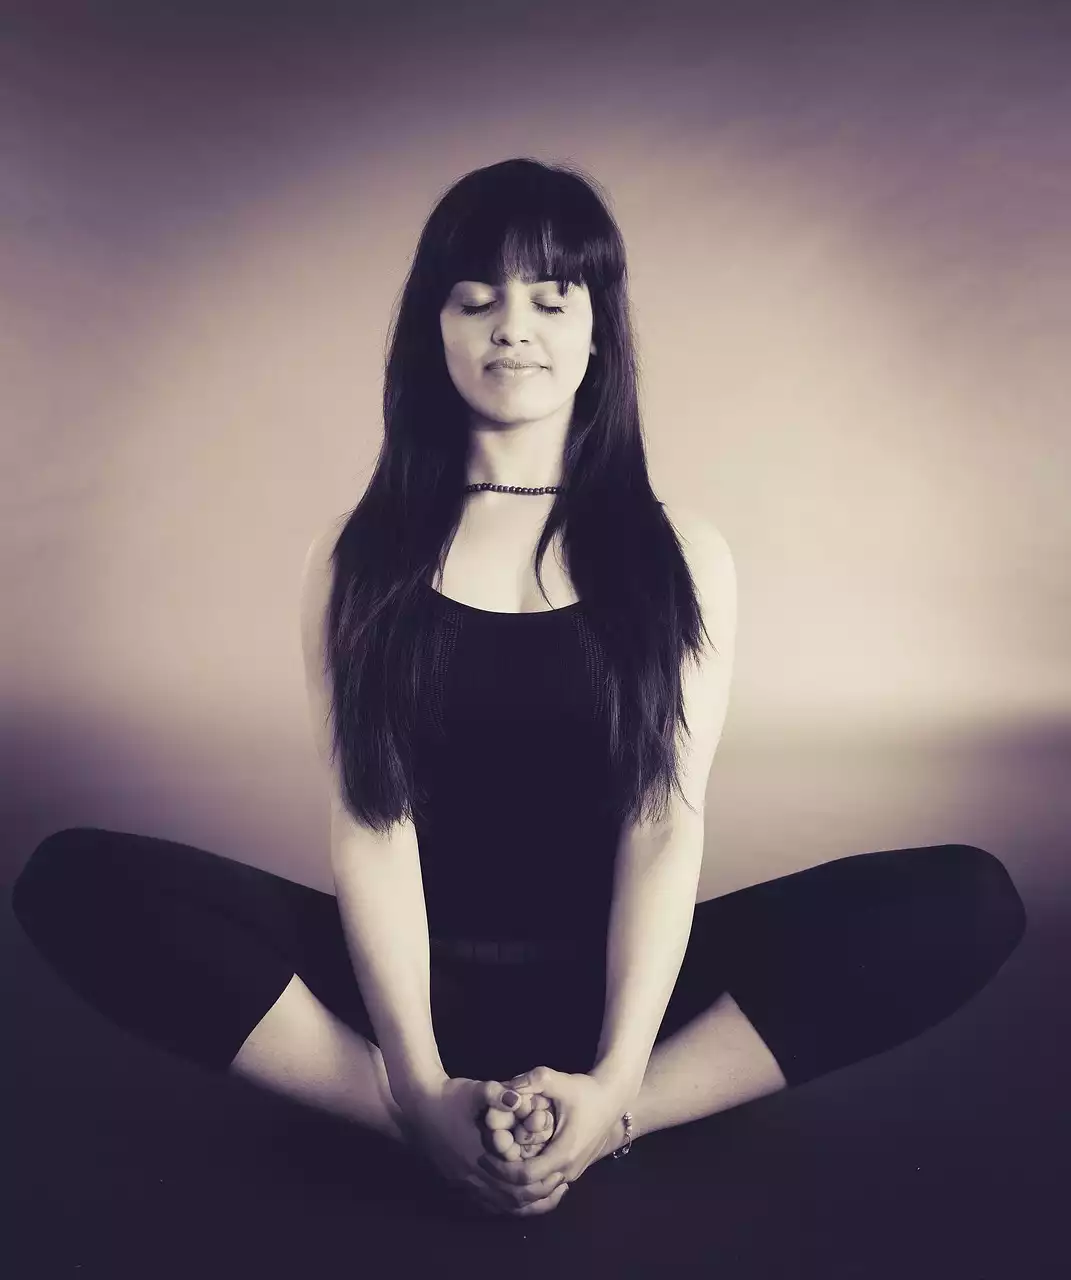 Forums pour les amateurs de yoga et de méditation pour se connecter et partager des expériences